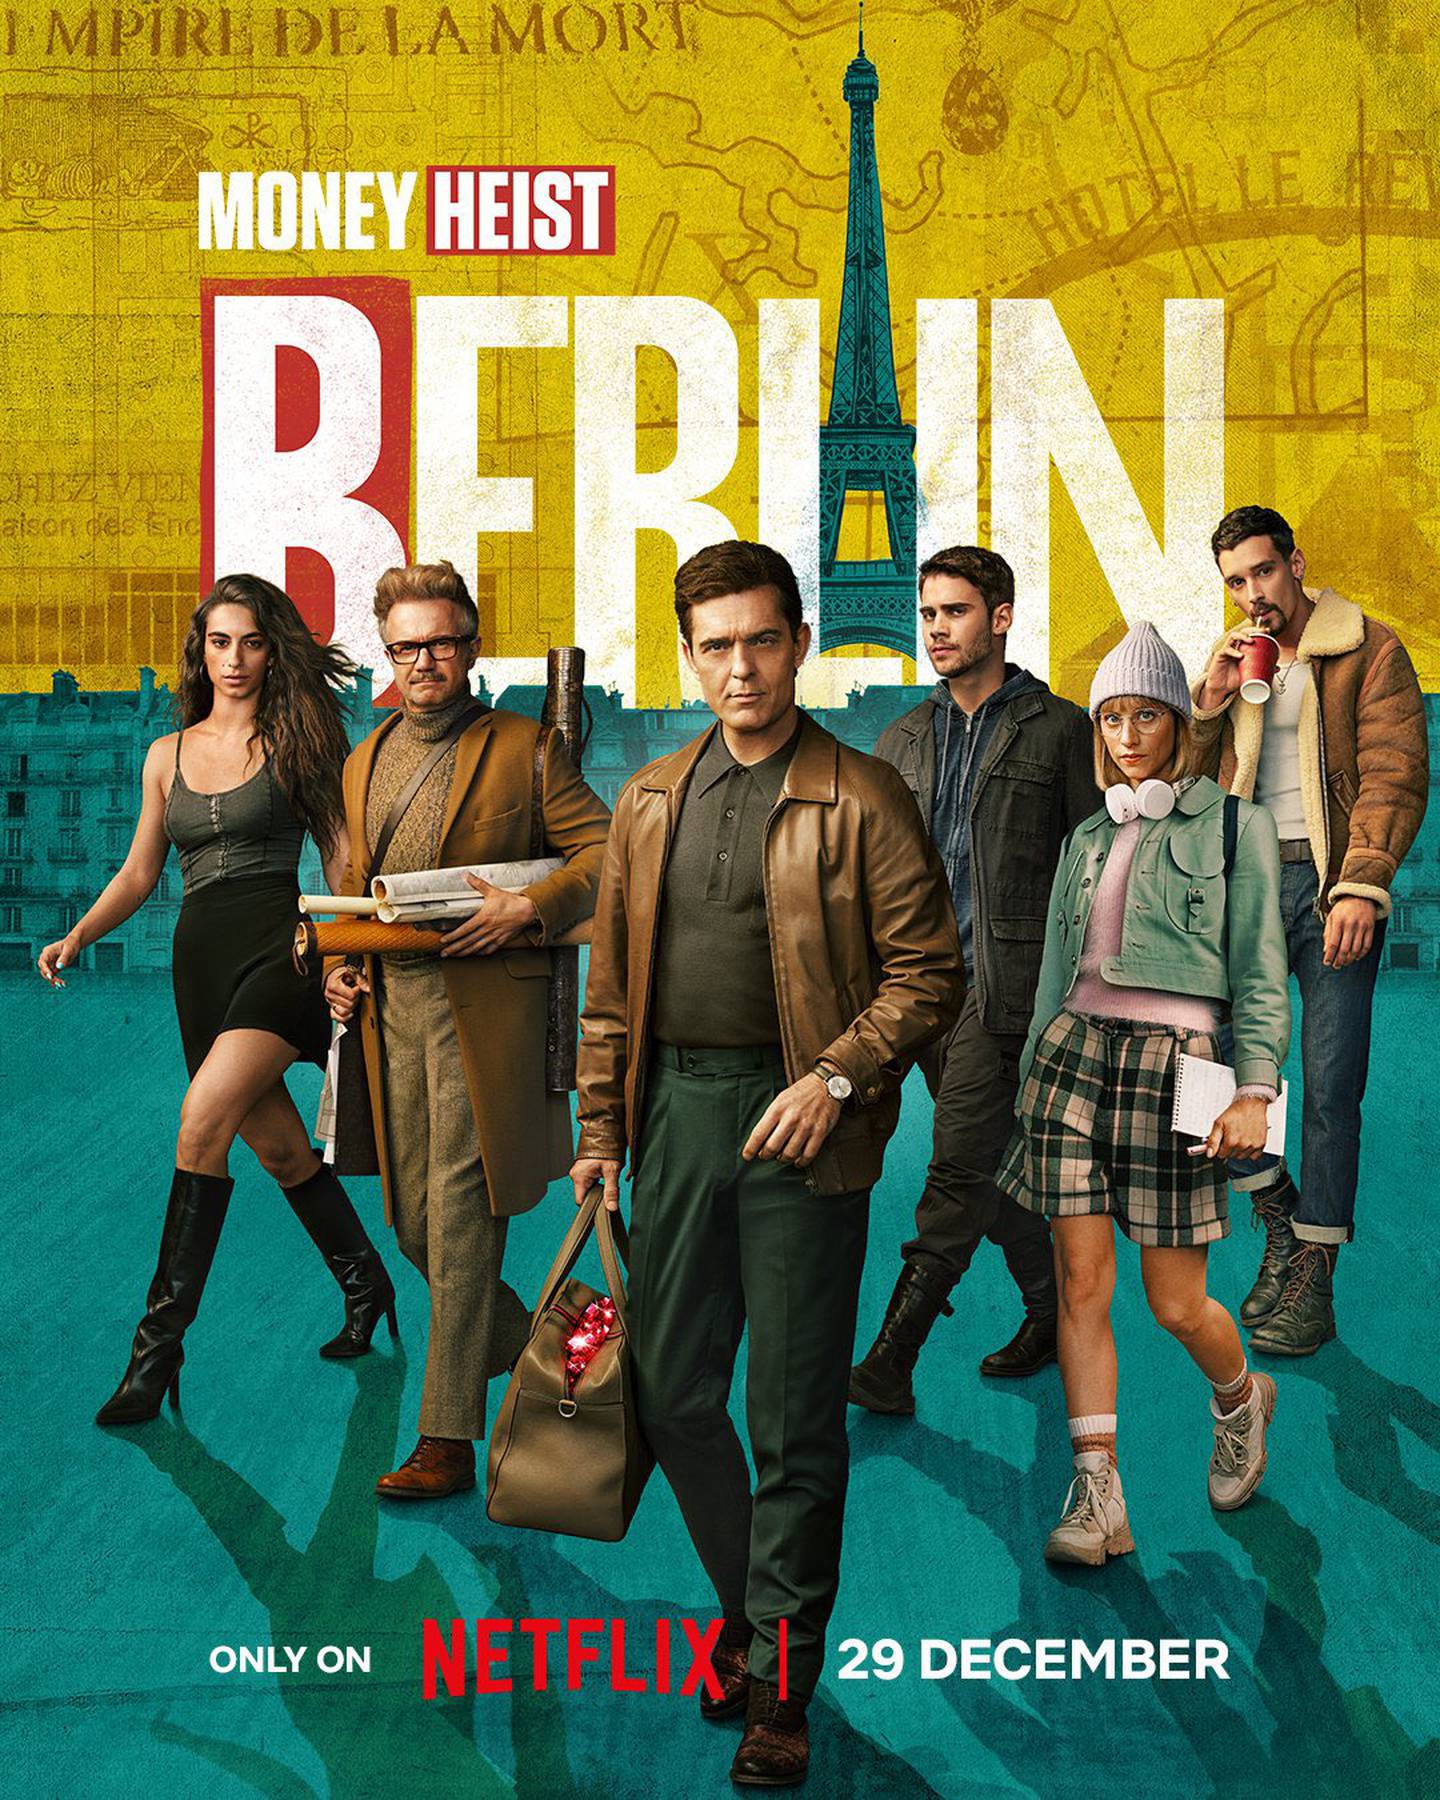 Serie Berlín ya tiene fecha de estreno en Netflix